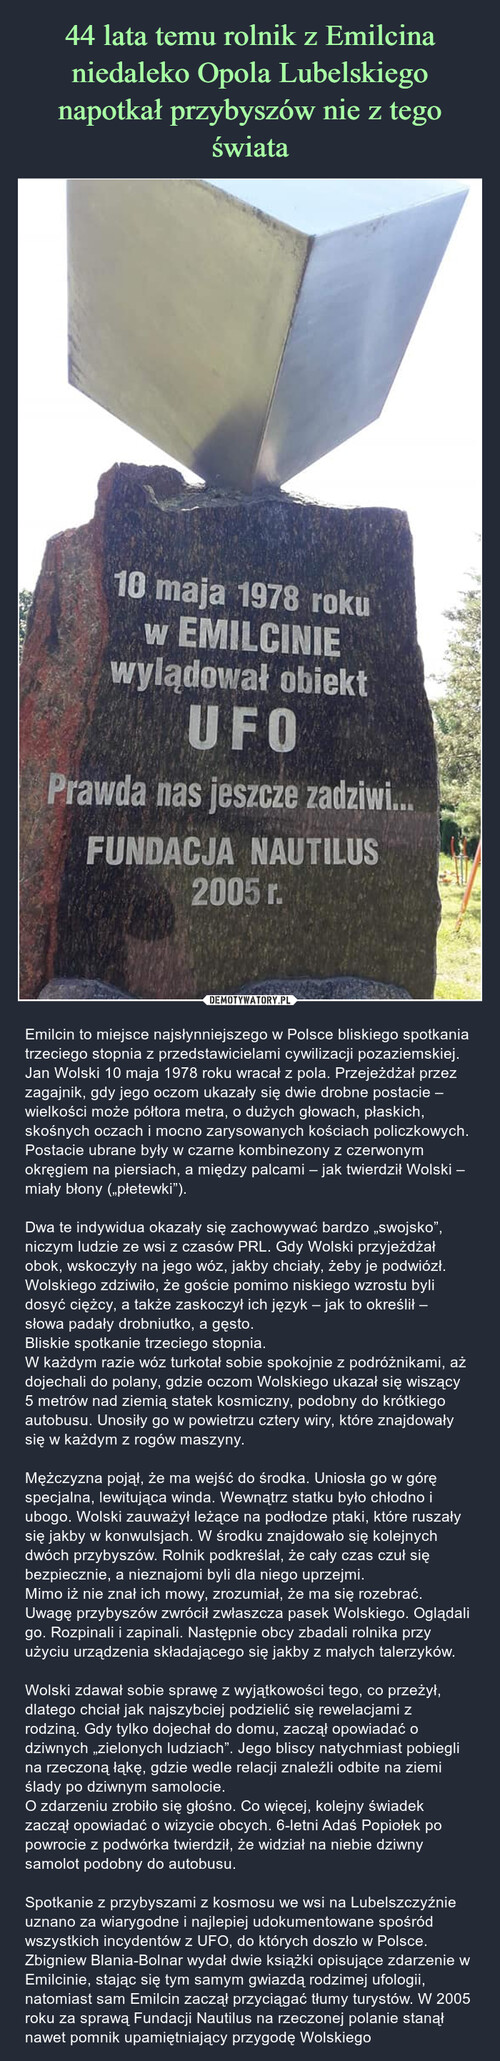 44 lata temu rolnik z Emilcina niedaleko Opola Lubelskiego napotkał przybyszów nie z tego świata